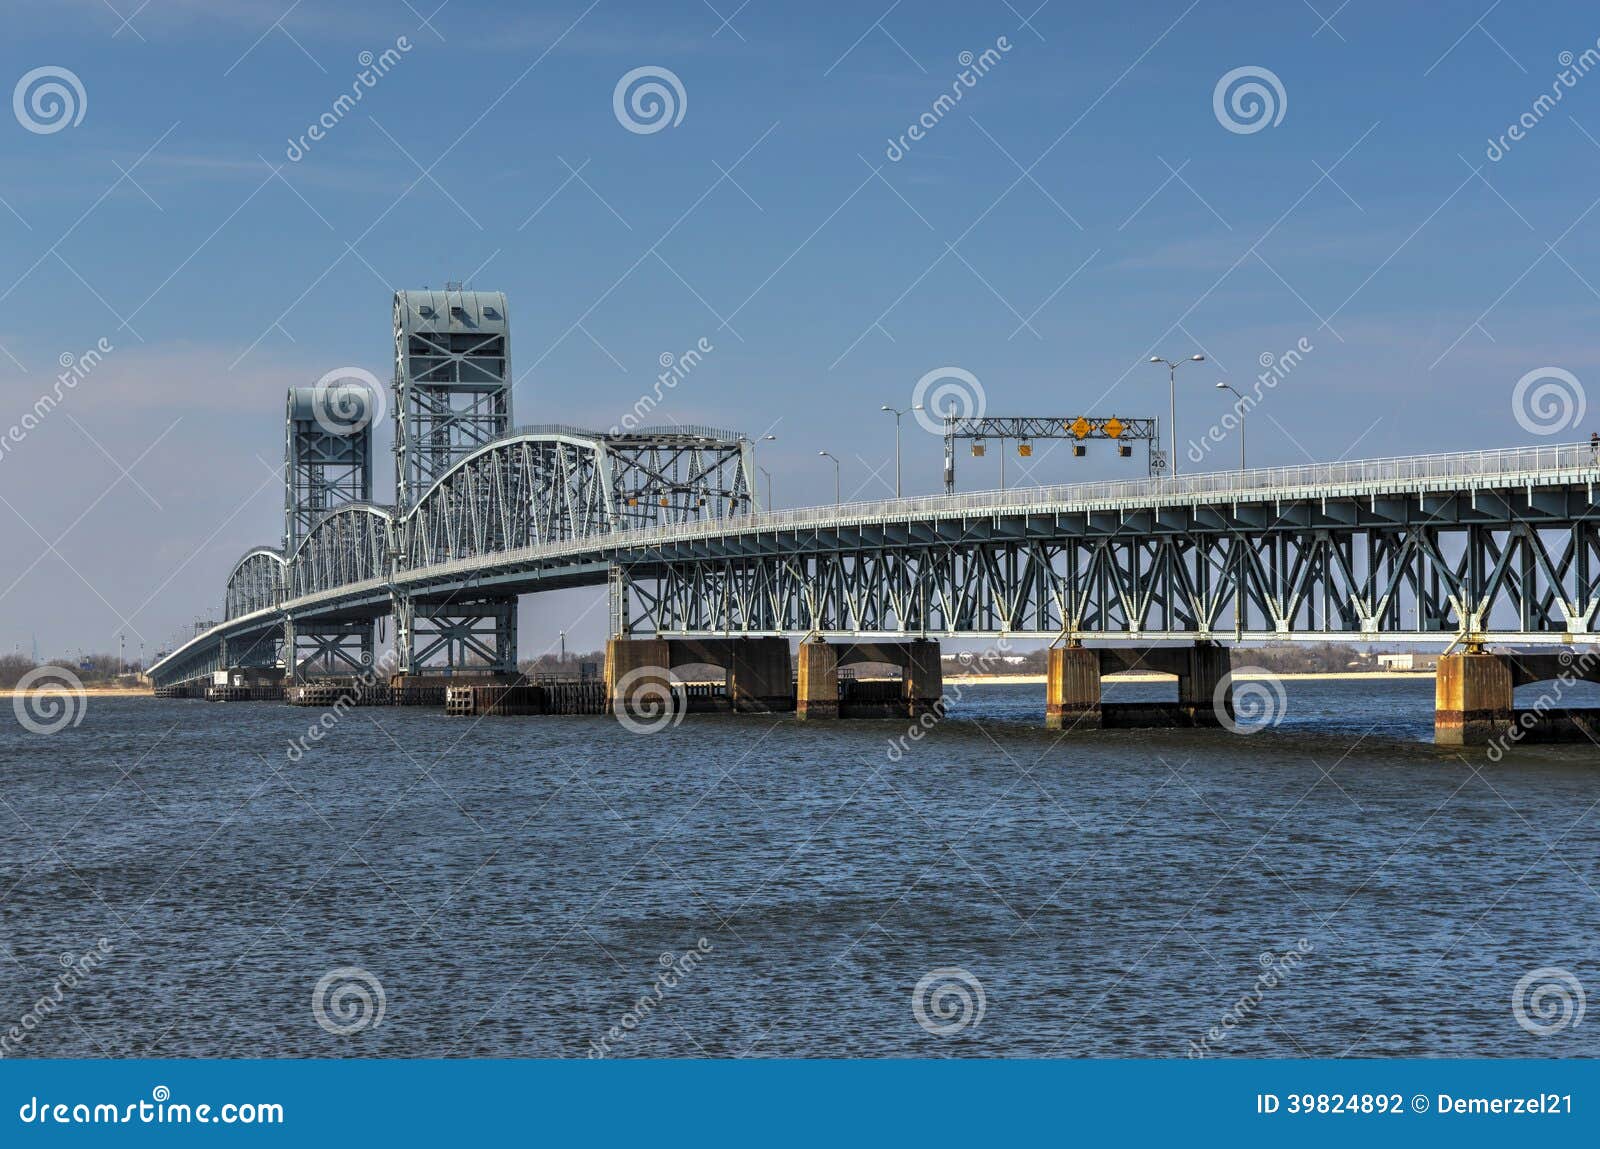 marine parkway-gil hodges memorial bridge